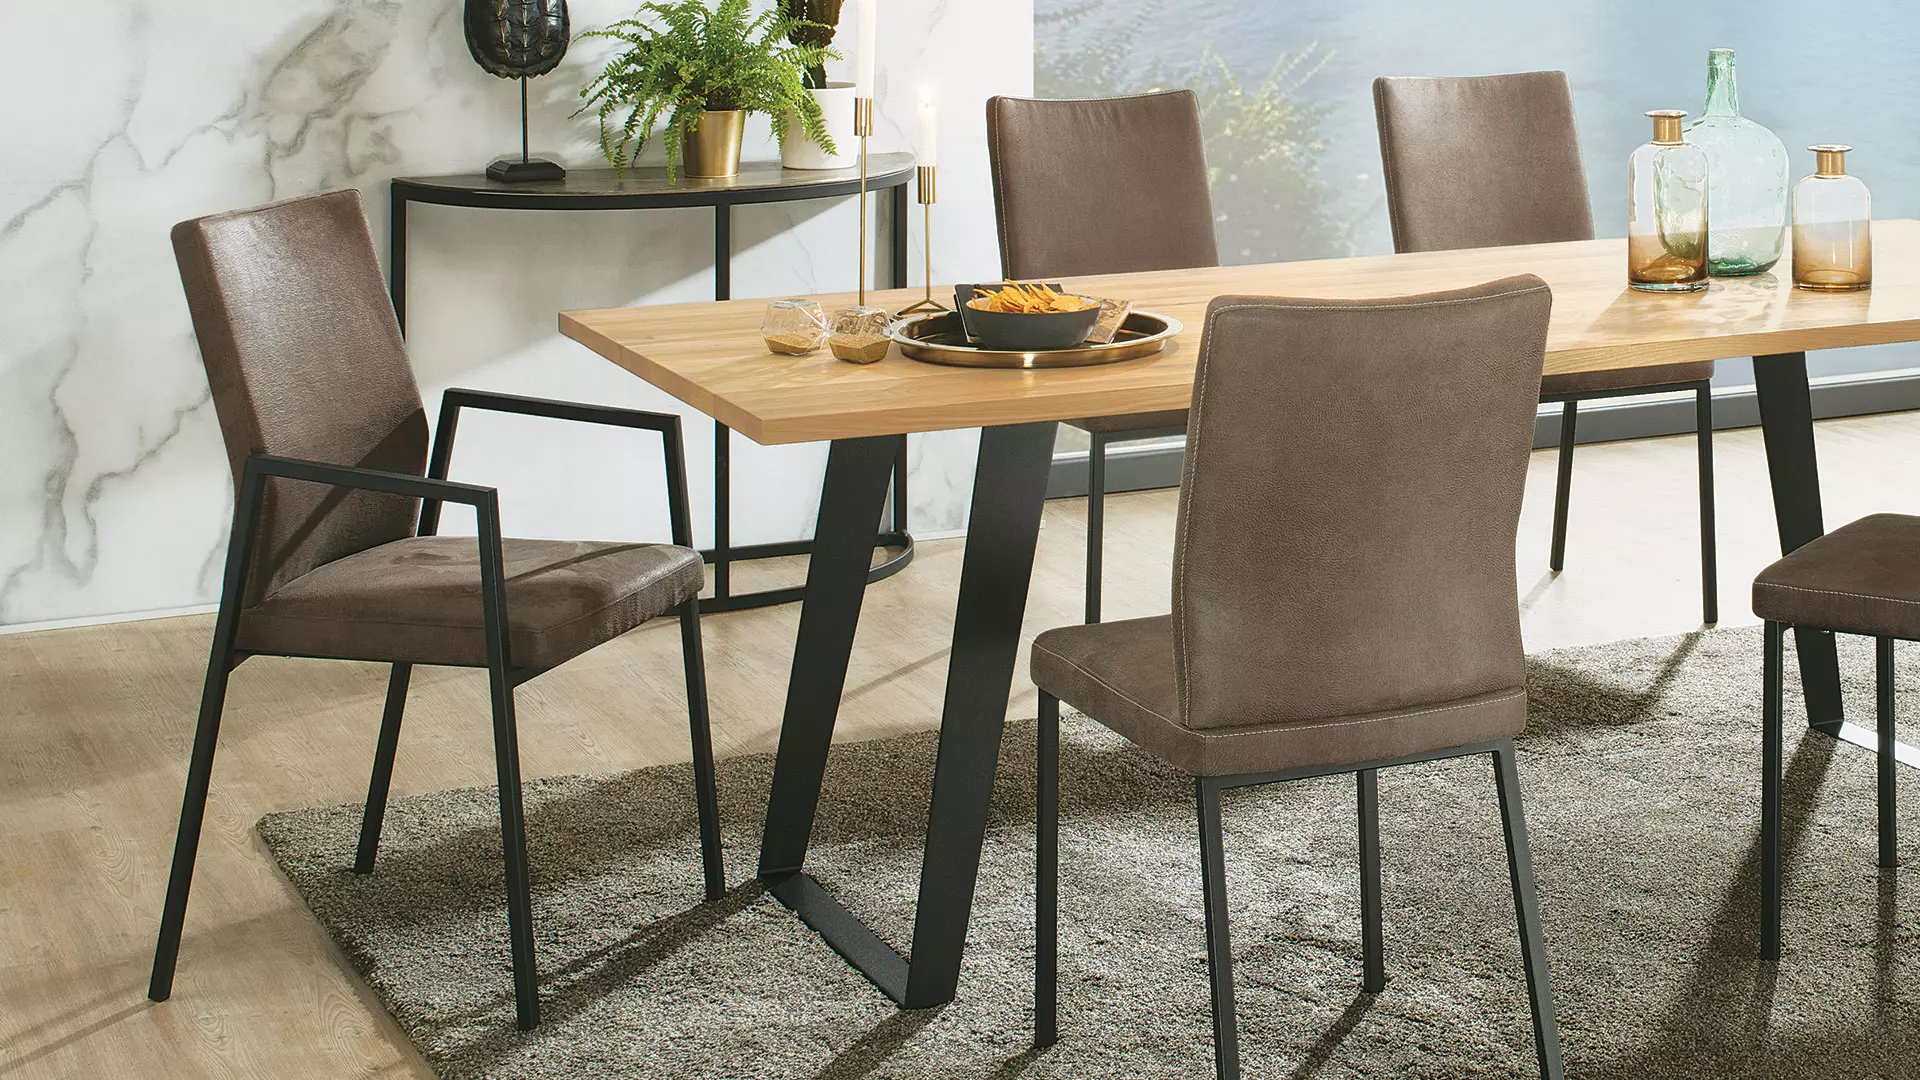 Cusio stoel, frame mat zwart, bekleding cappuccino leder